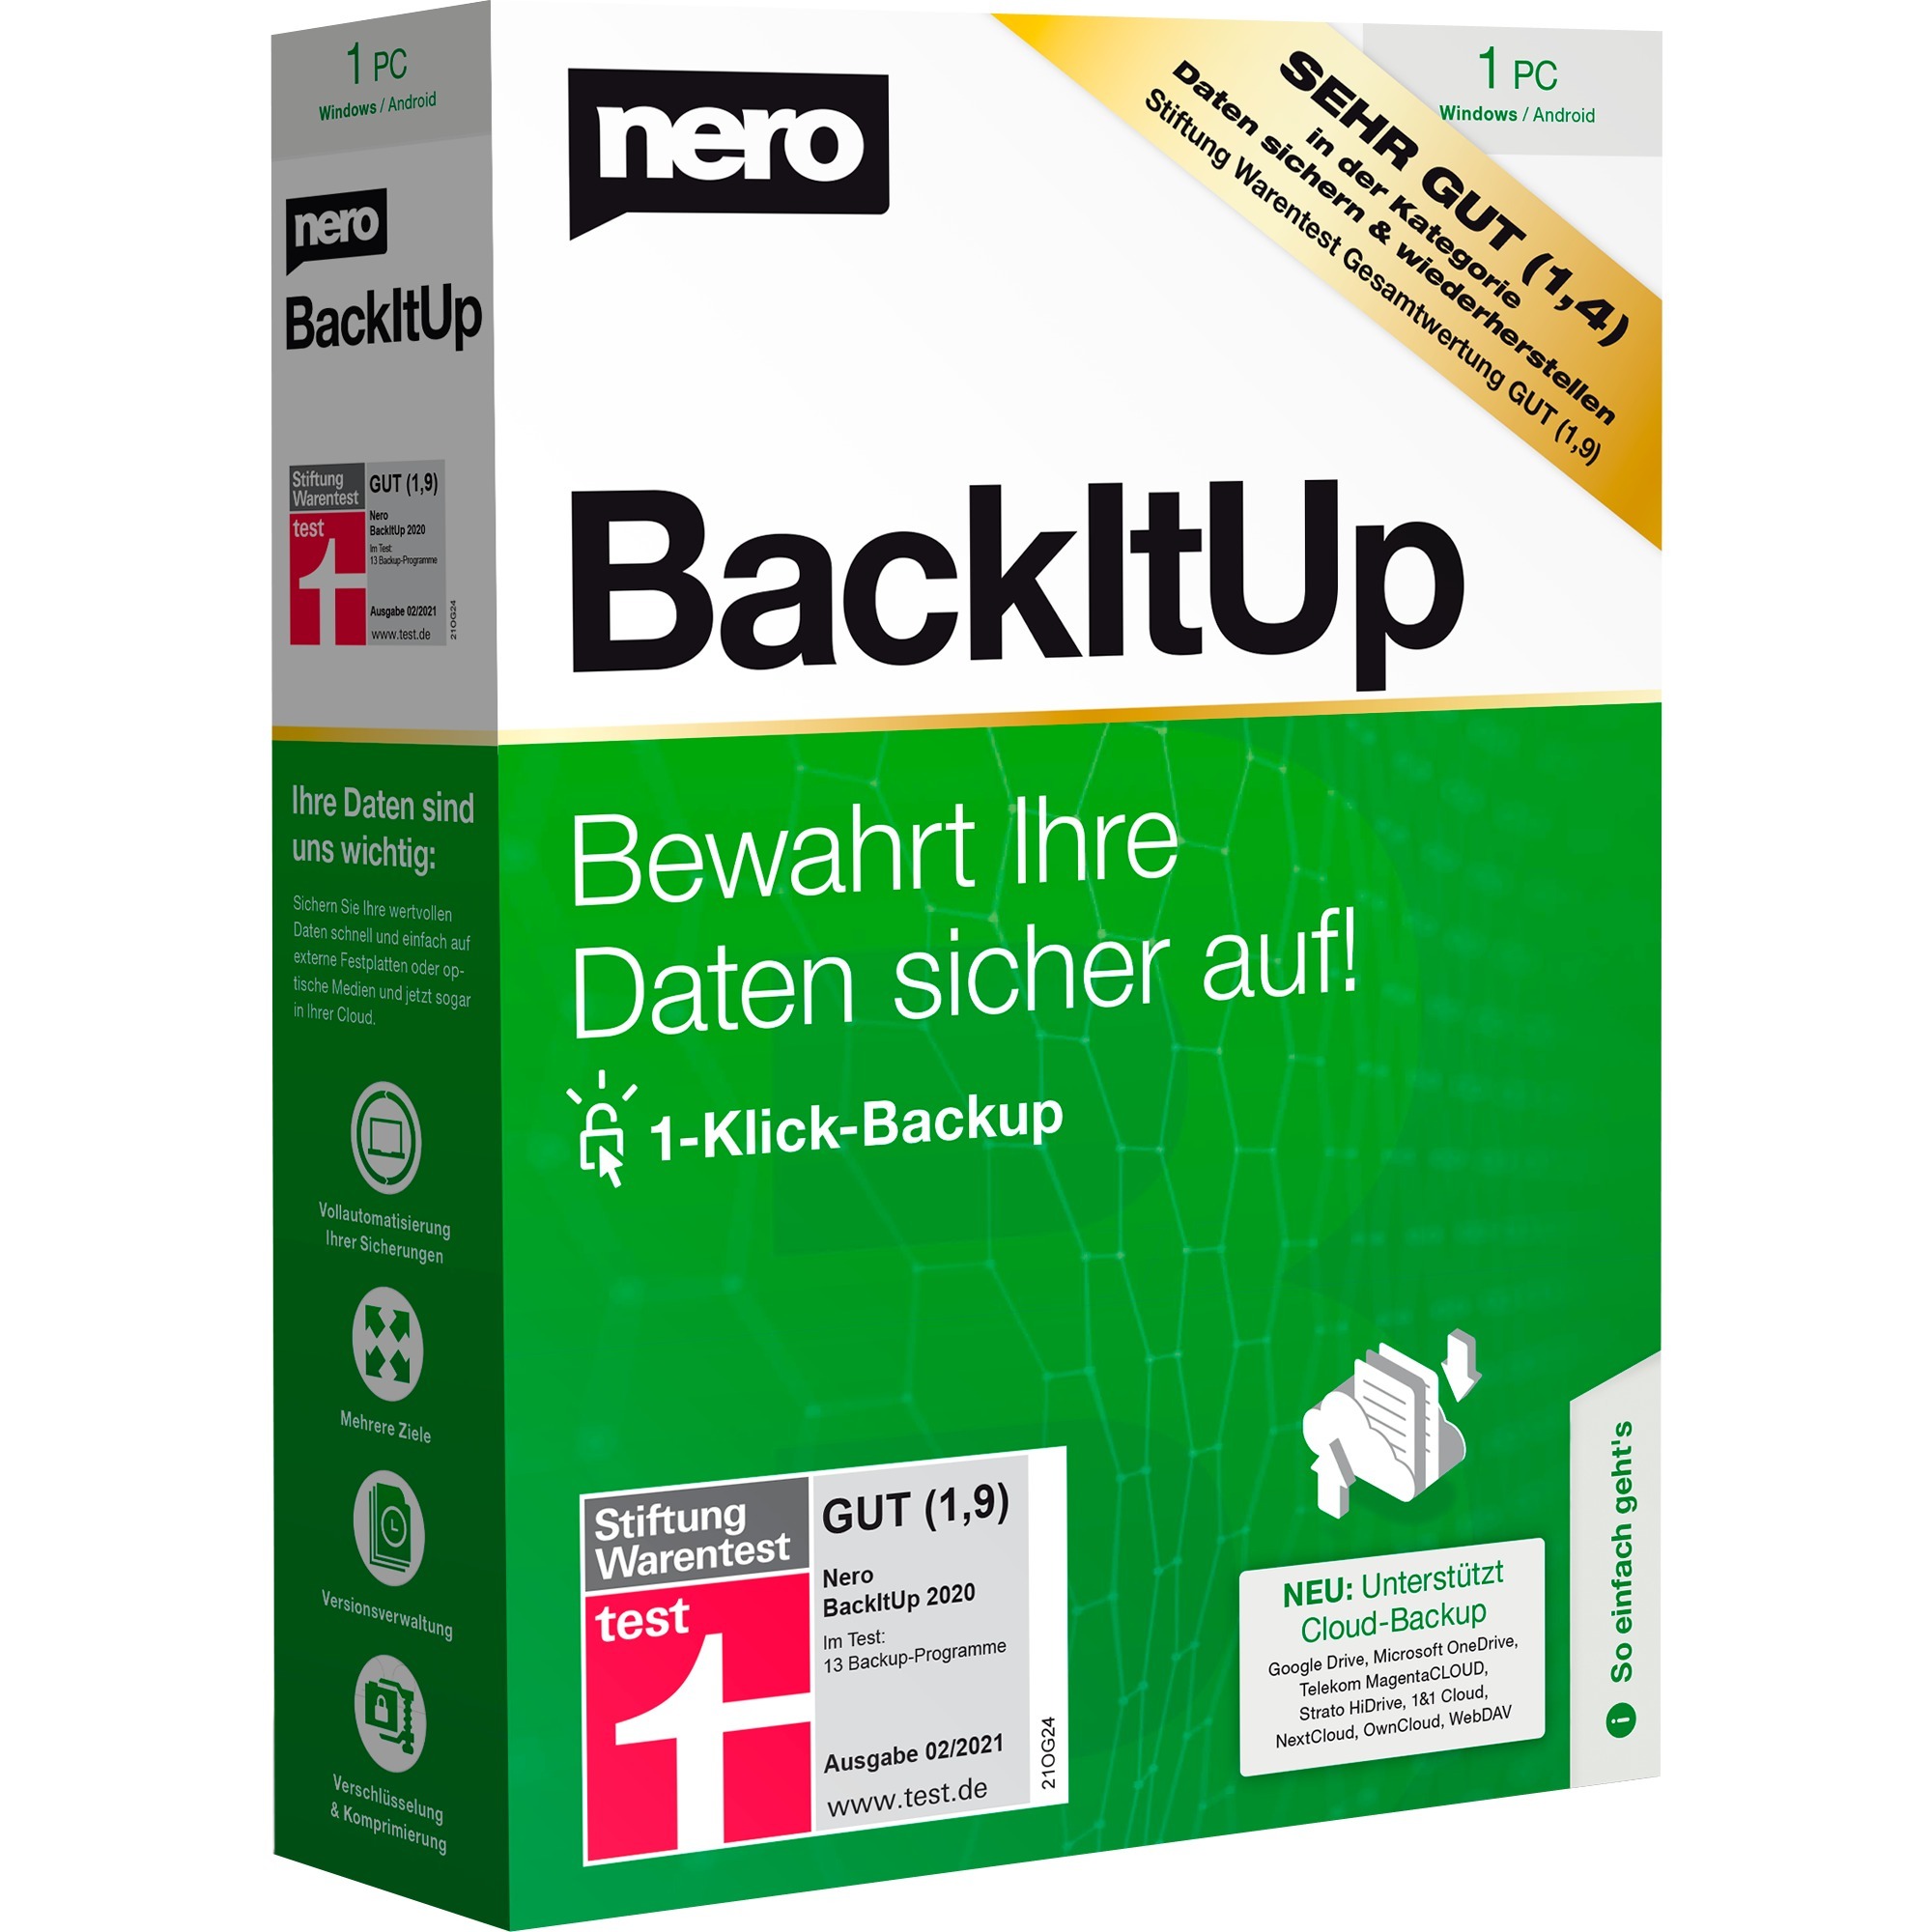 Image of Alternate - BackItUp, Datensicherung-Software online einkaufen bei Alternate